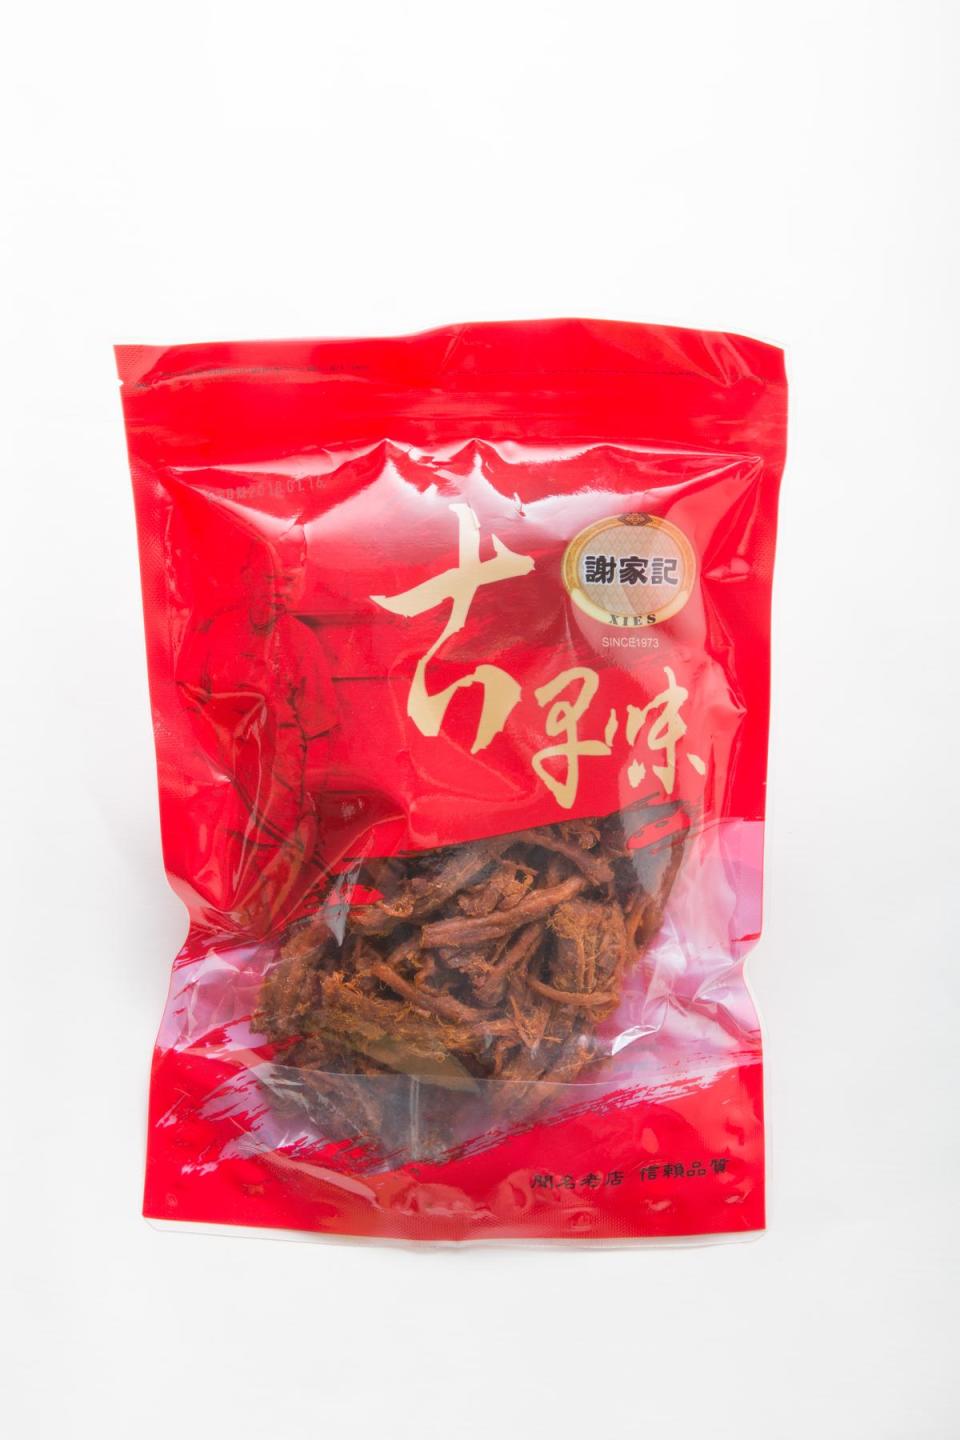 「謝家記食品行」金桔豬肉絲是竹南門市限定商品。